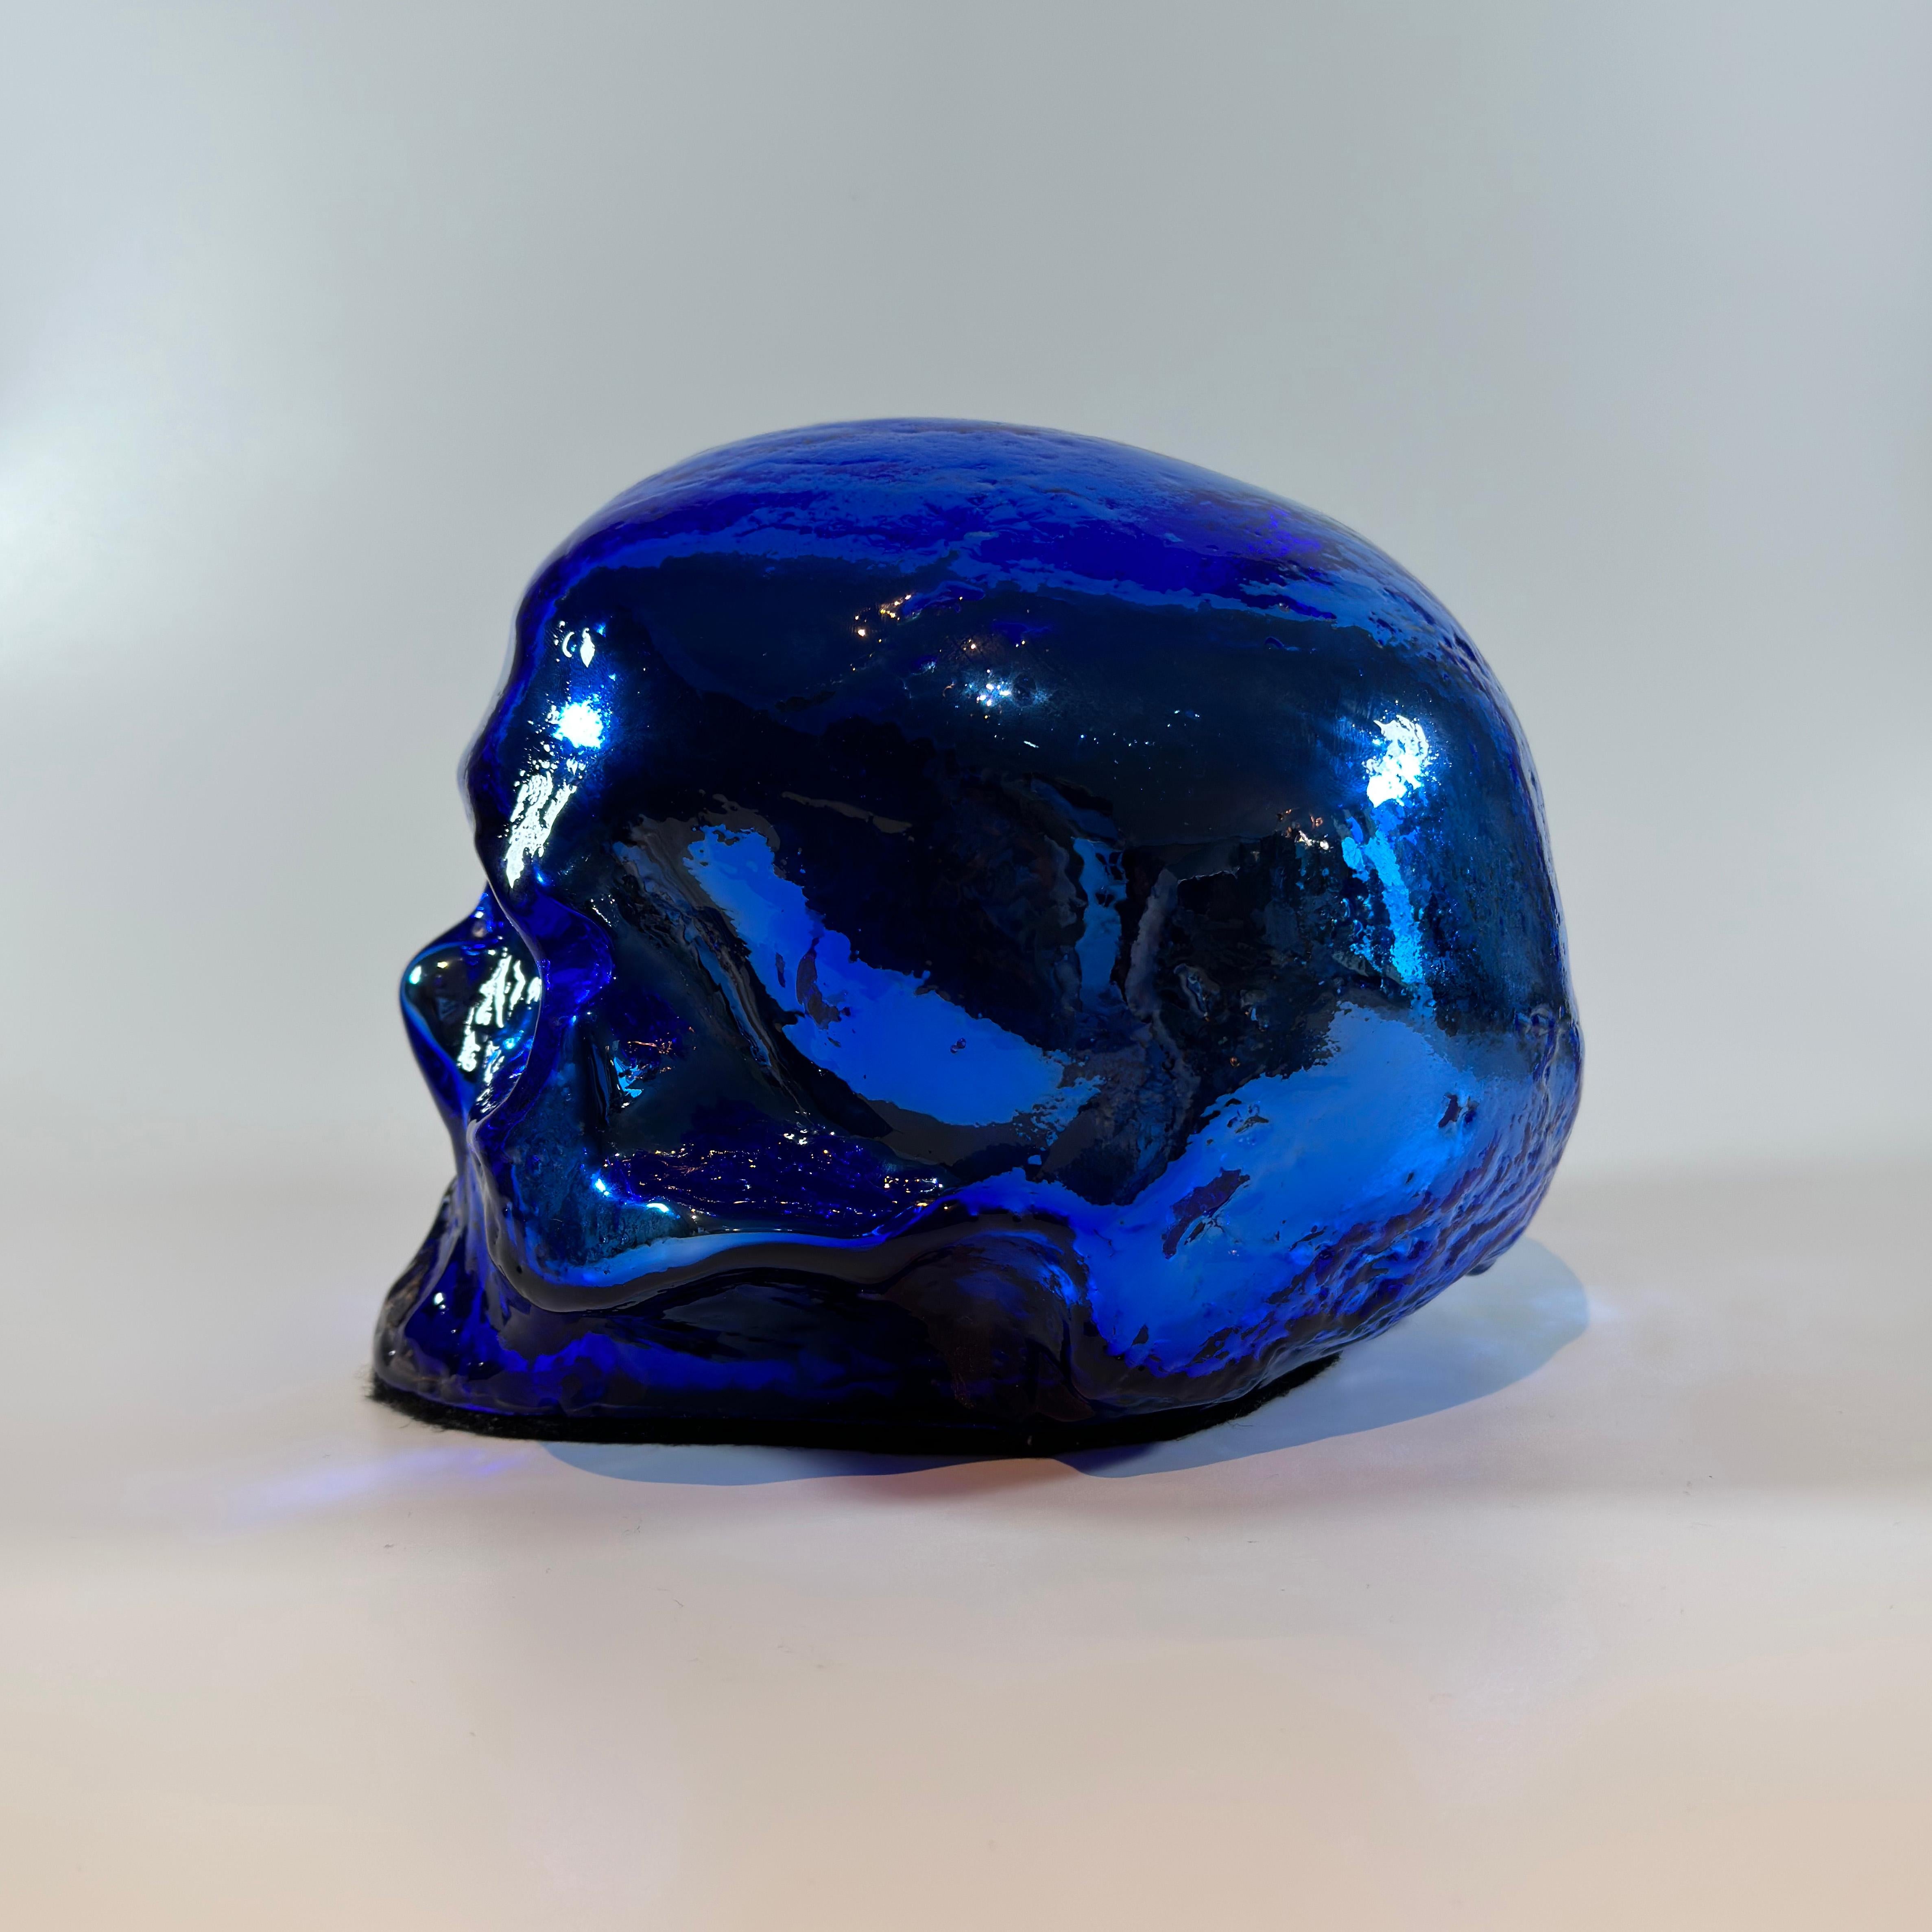 Cast Blue Glass Skull Ornament Ludvig Lofgren for Kosta Boda - Limited Edition Signed